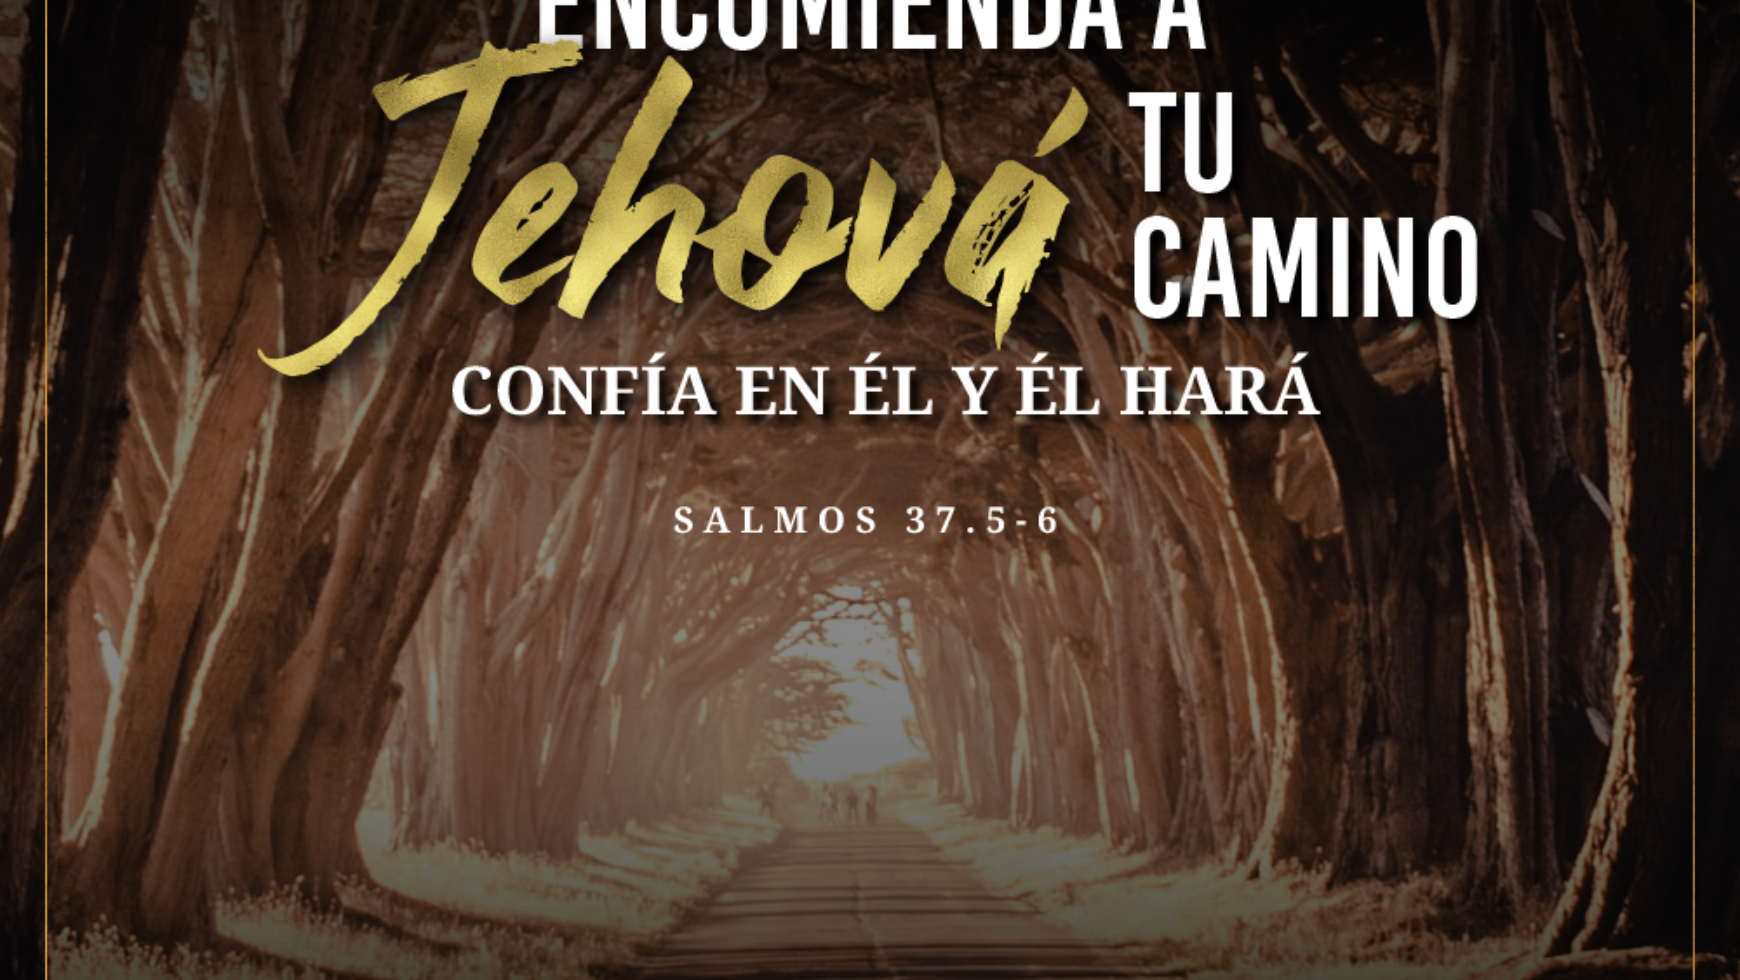 Encomienda a Jehová tu camino confía en Él y Él hará